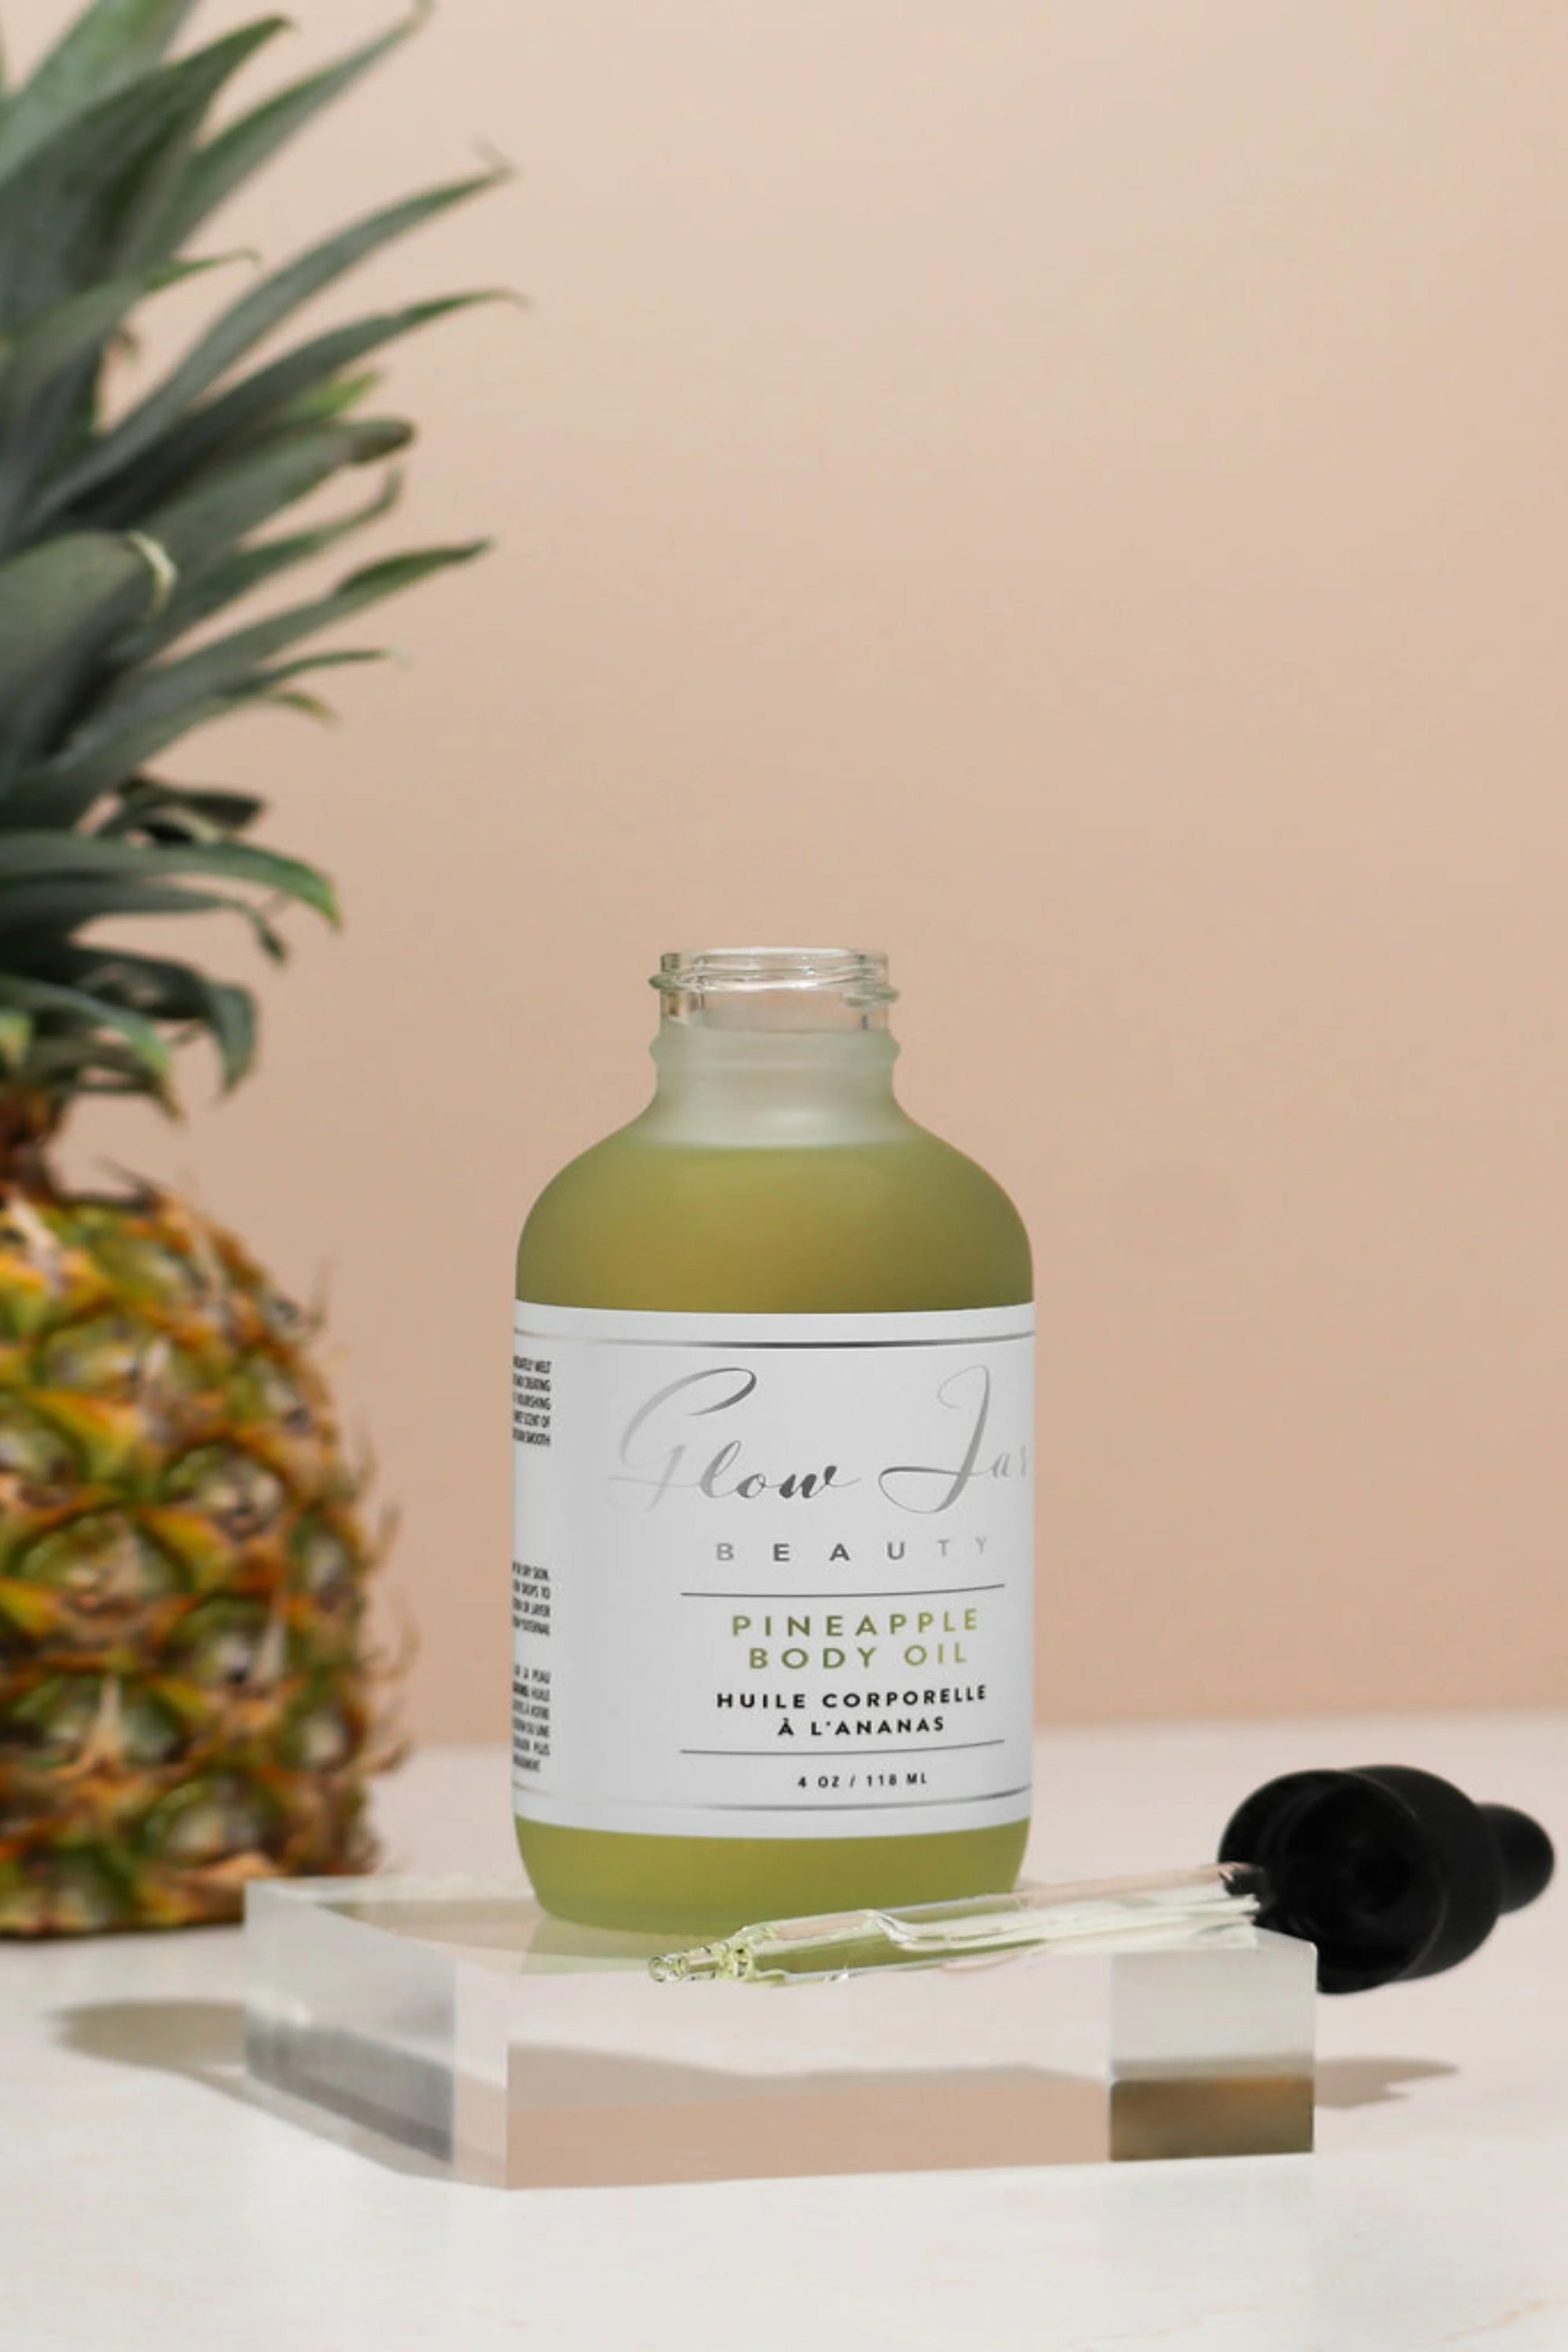 Glow Jar Beauty Pineapple Body Oil